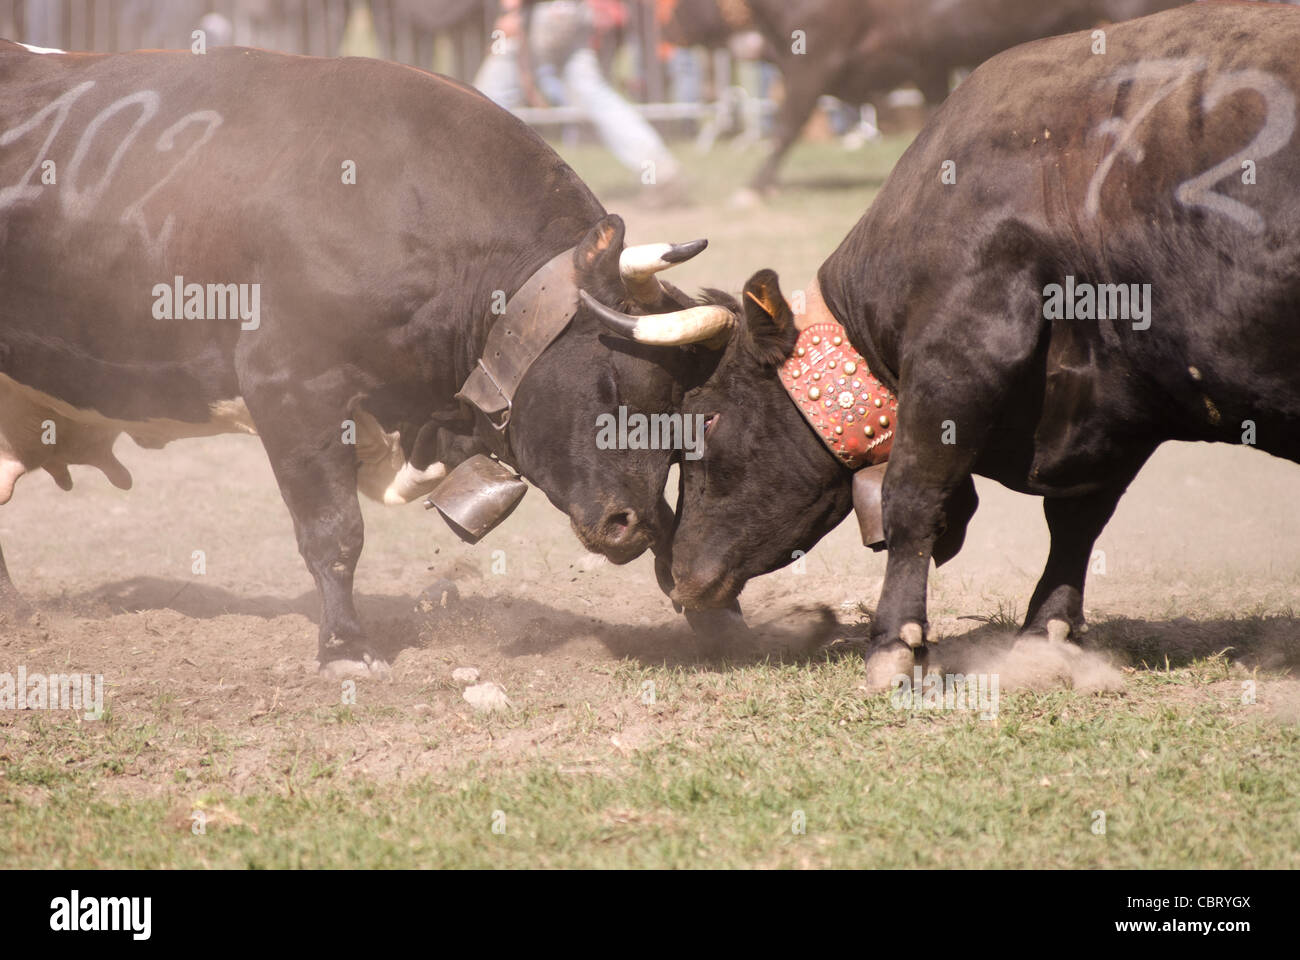 La bataille de reines (bataille des reines), un tournoi de combats entre les vaches. Pinte, vallée d'aoste, Italie Banque D'Images